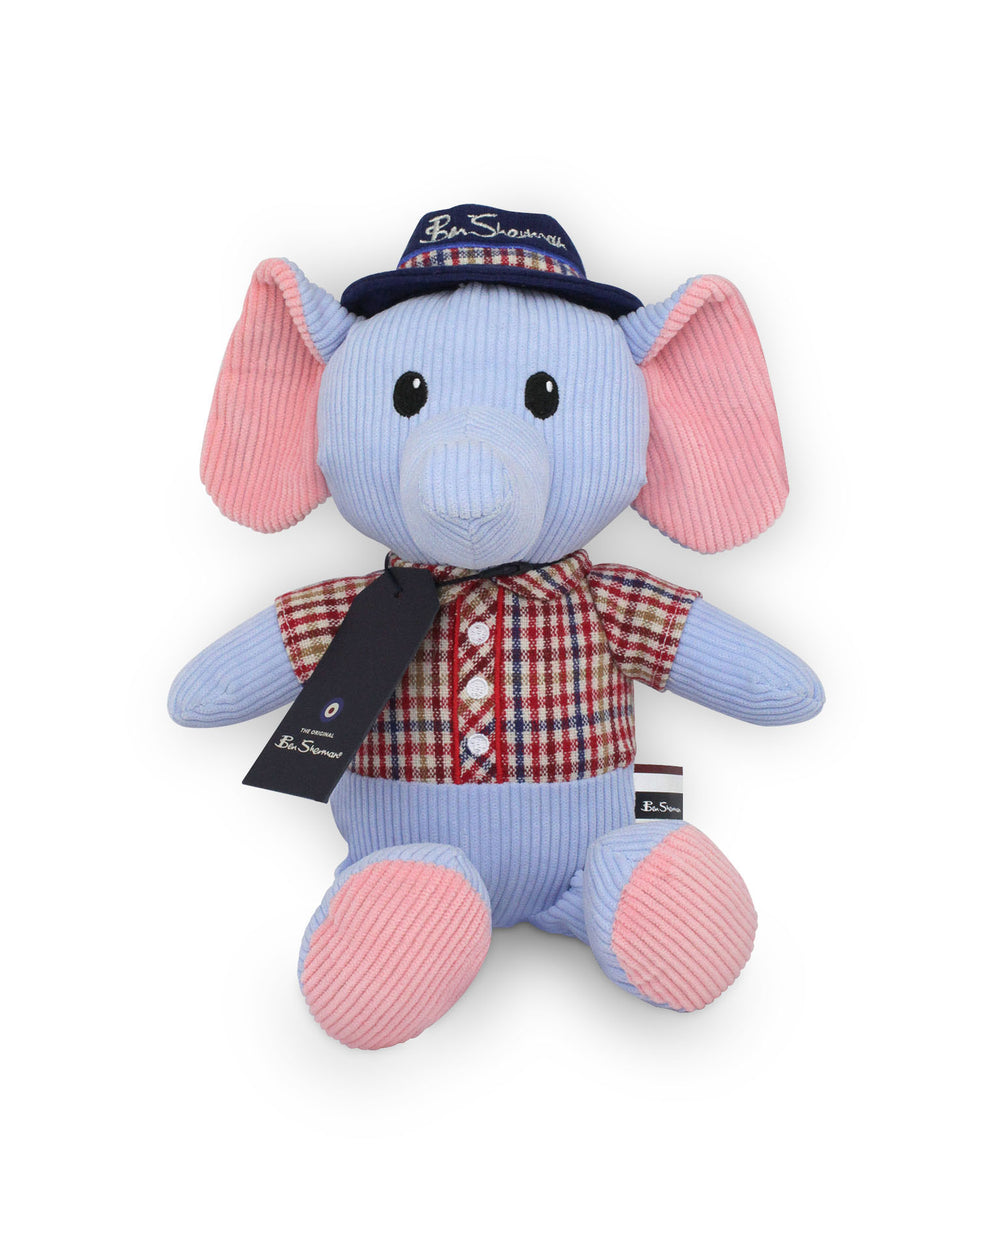 Tailored Elephant Plush Pet Toy - Grey